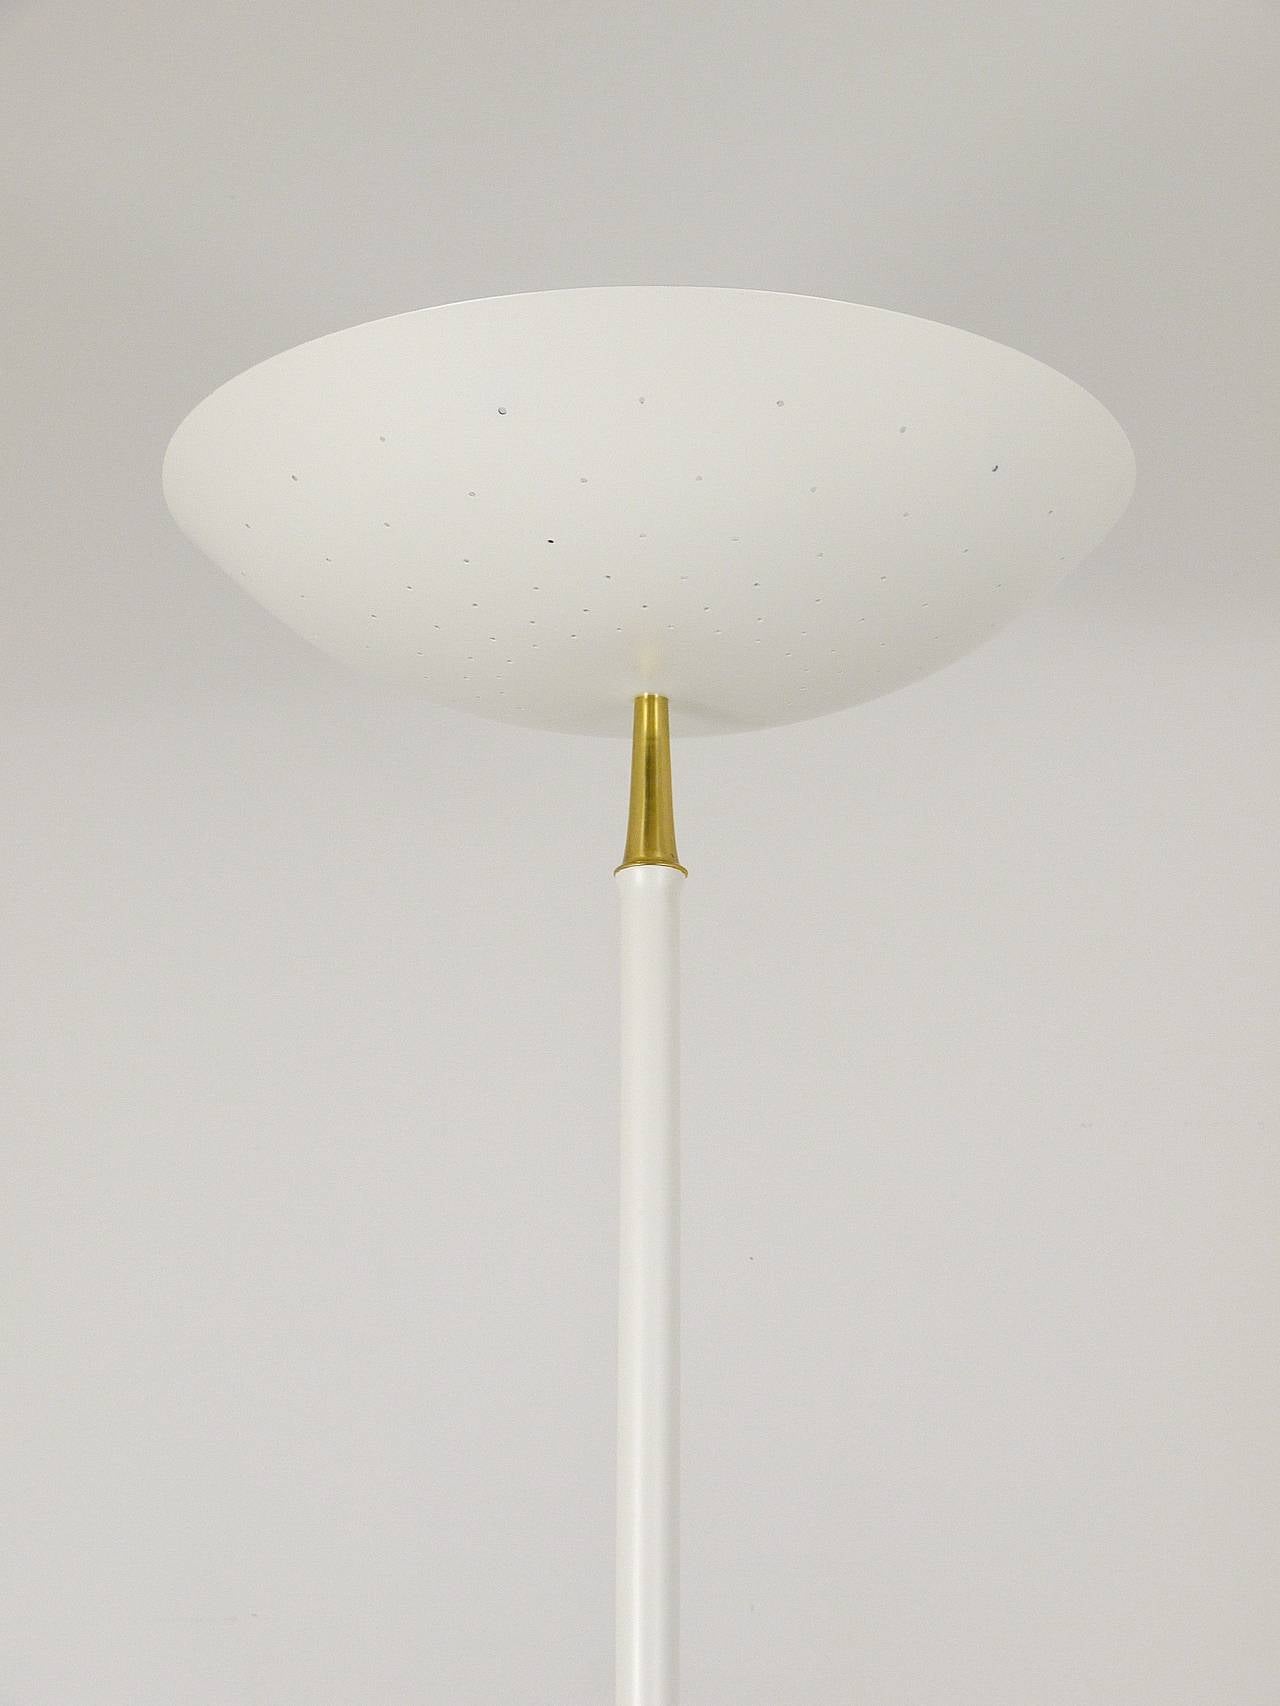 Mid-Century Modern Elegant Italian Mid-Century Uplight Floor Lamp, Arteluce Stilnovo Style, 1950s For Sale